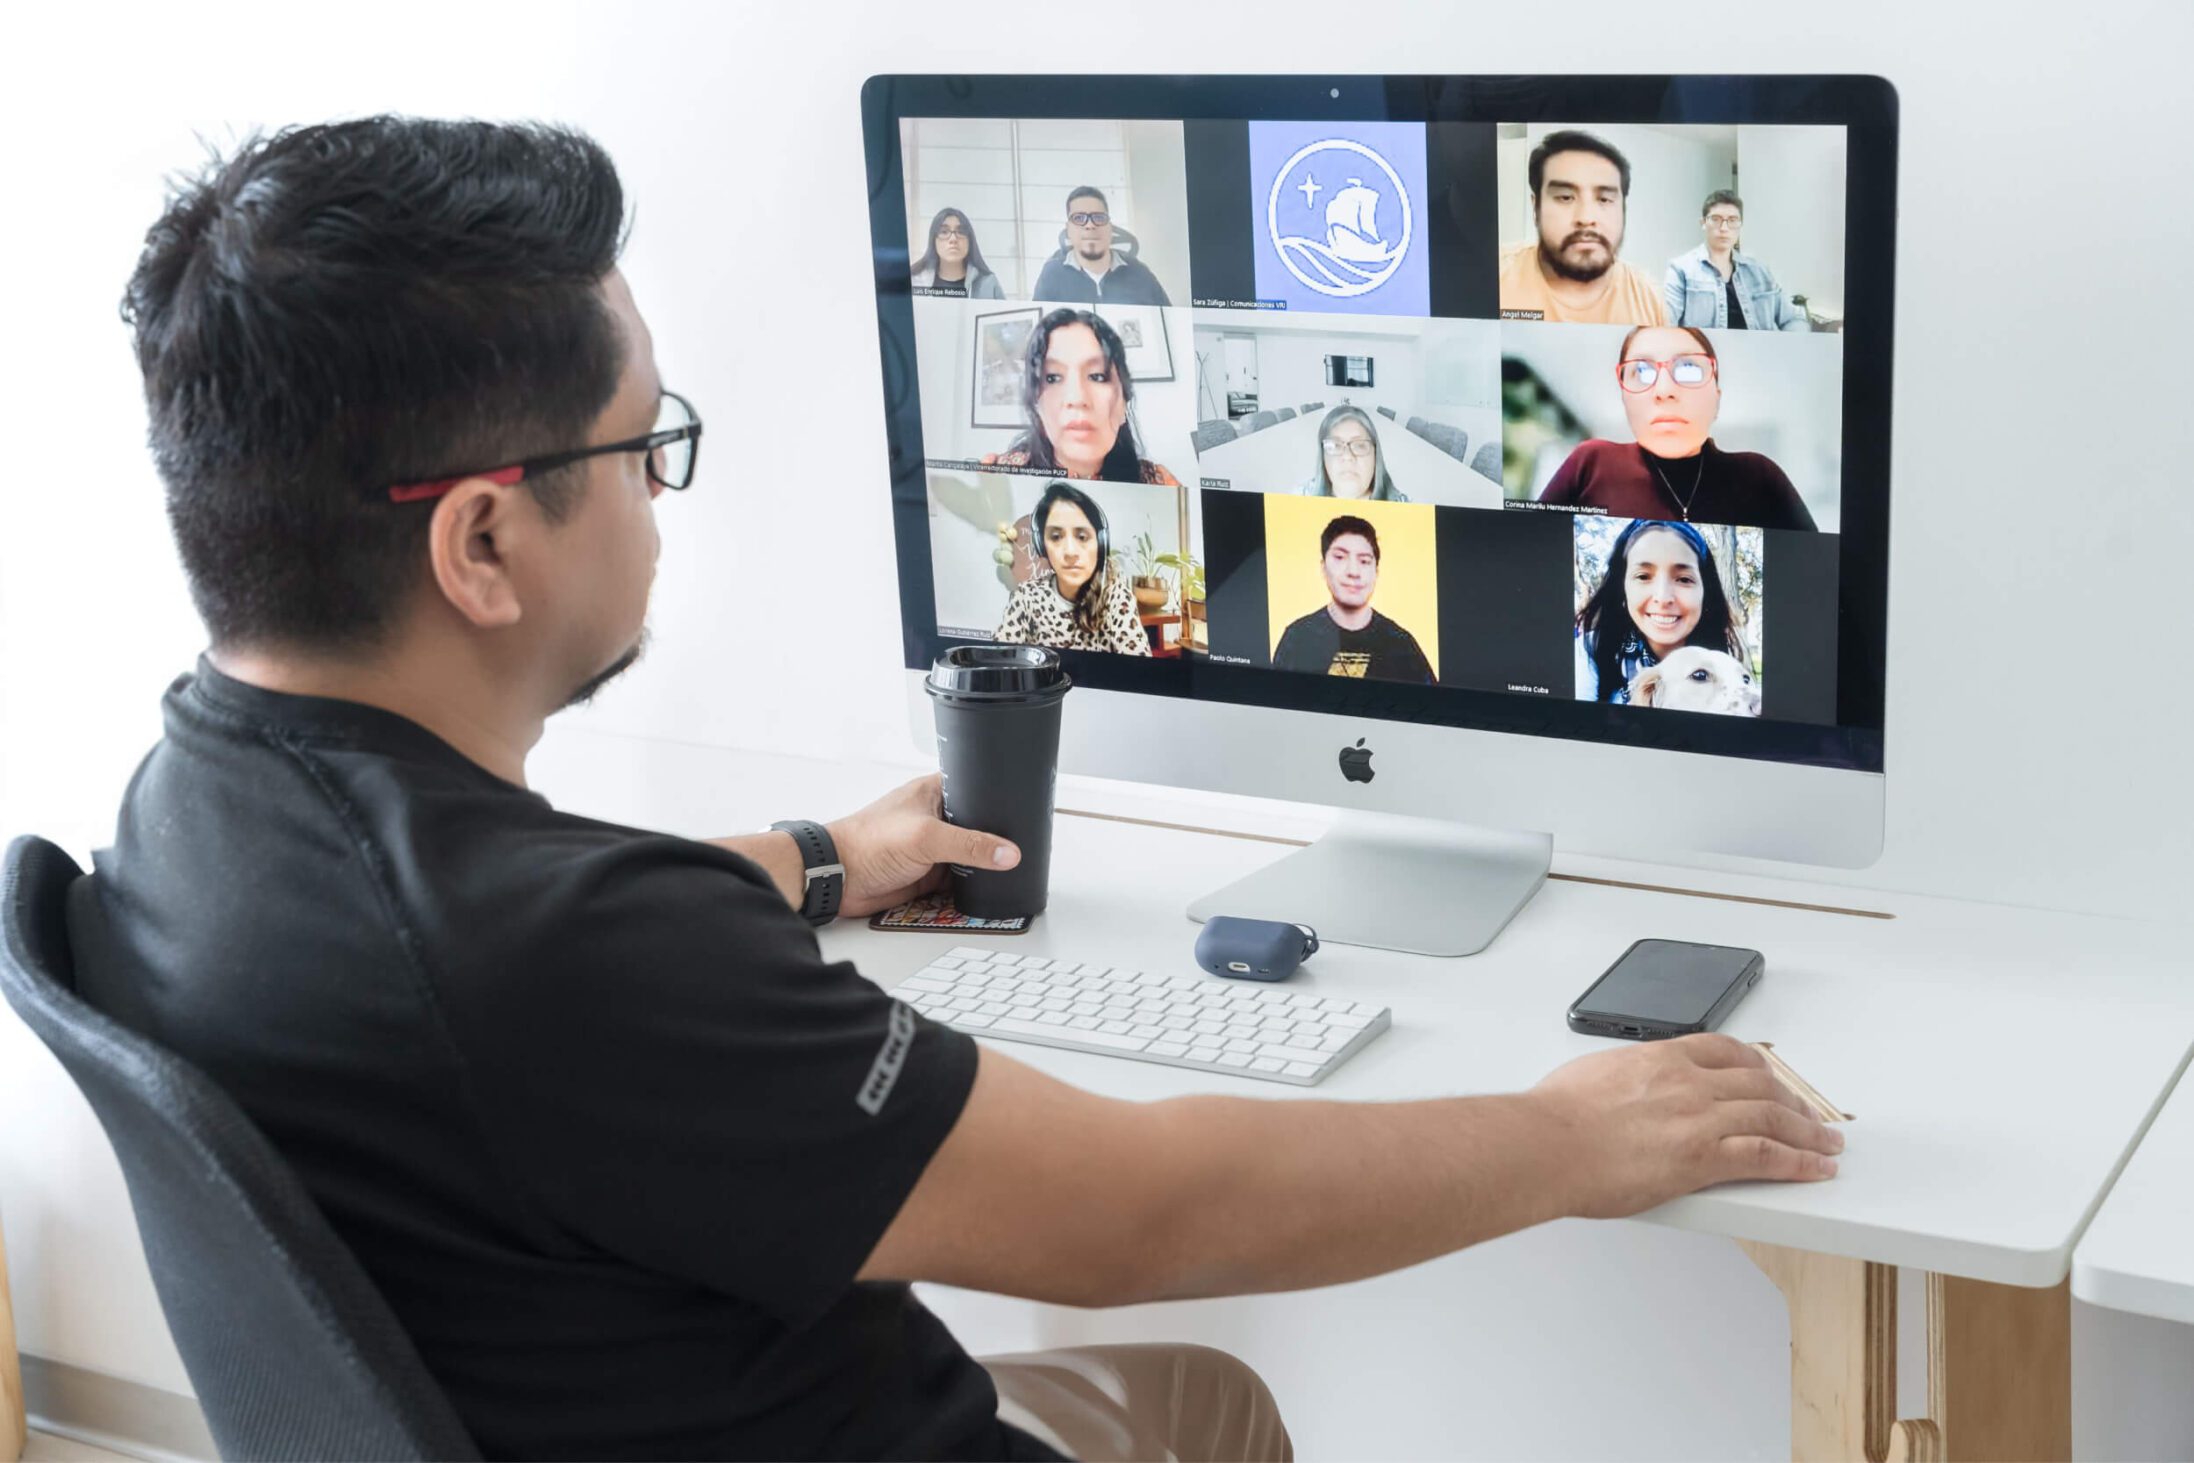 Hombre frente a una computadora en una reunión virtual con clientes.